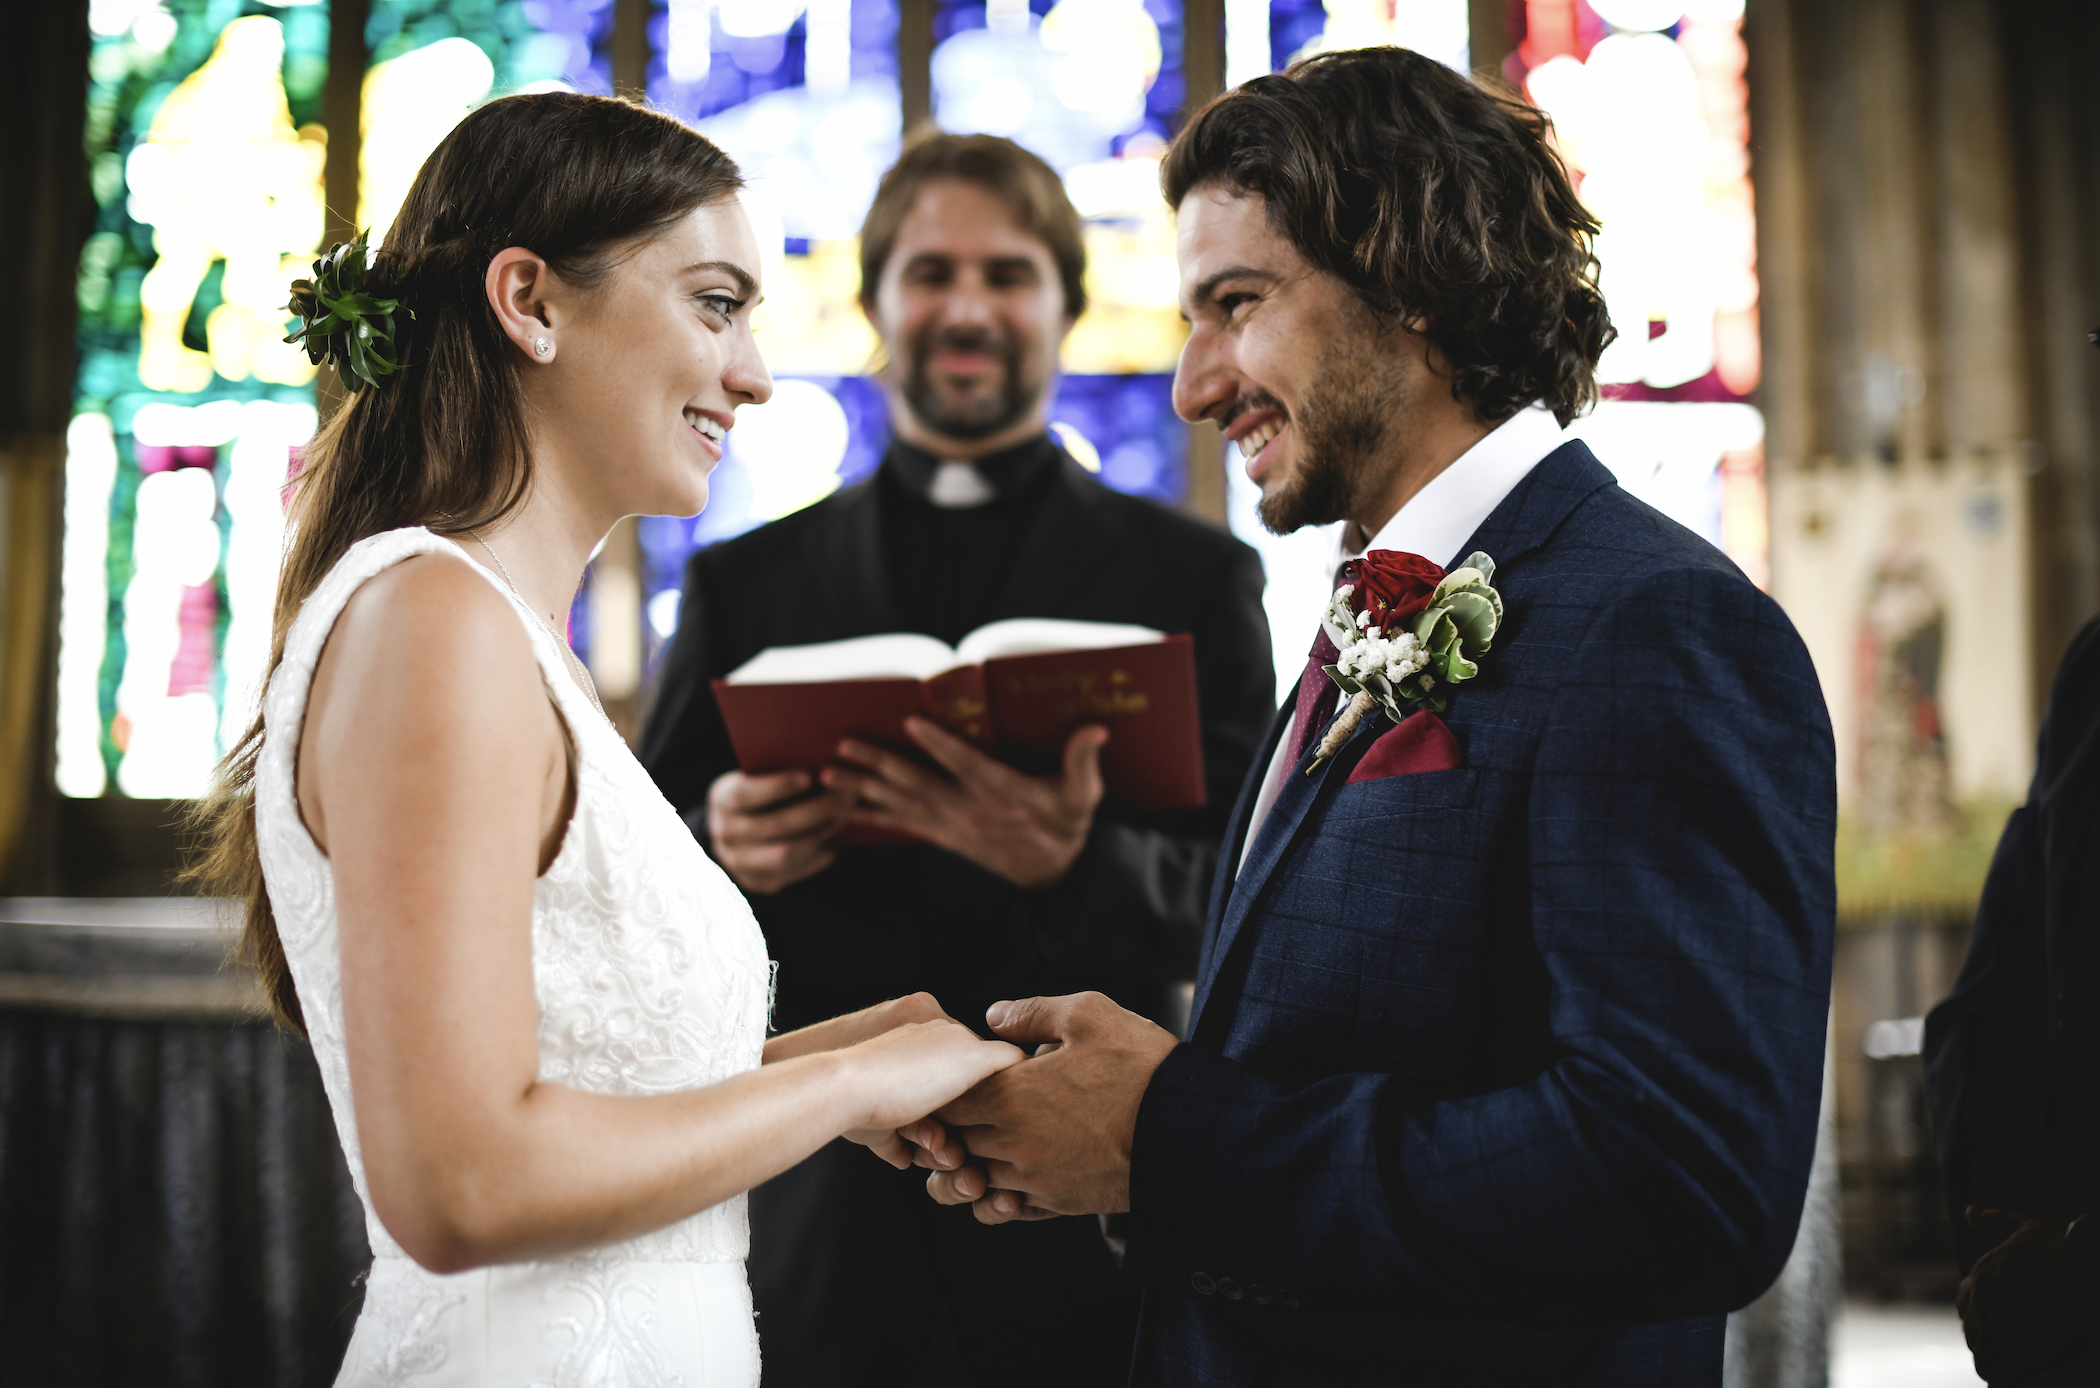 Eine Braut und ein Bräutigam stehen vor dem Altar | Quelle: Shutterstock